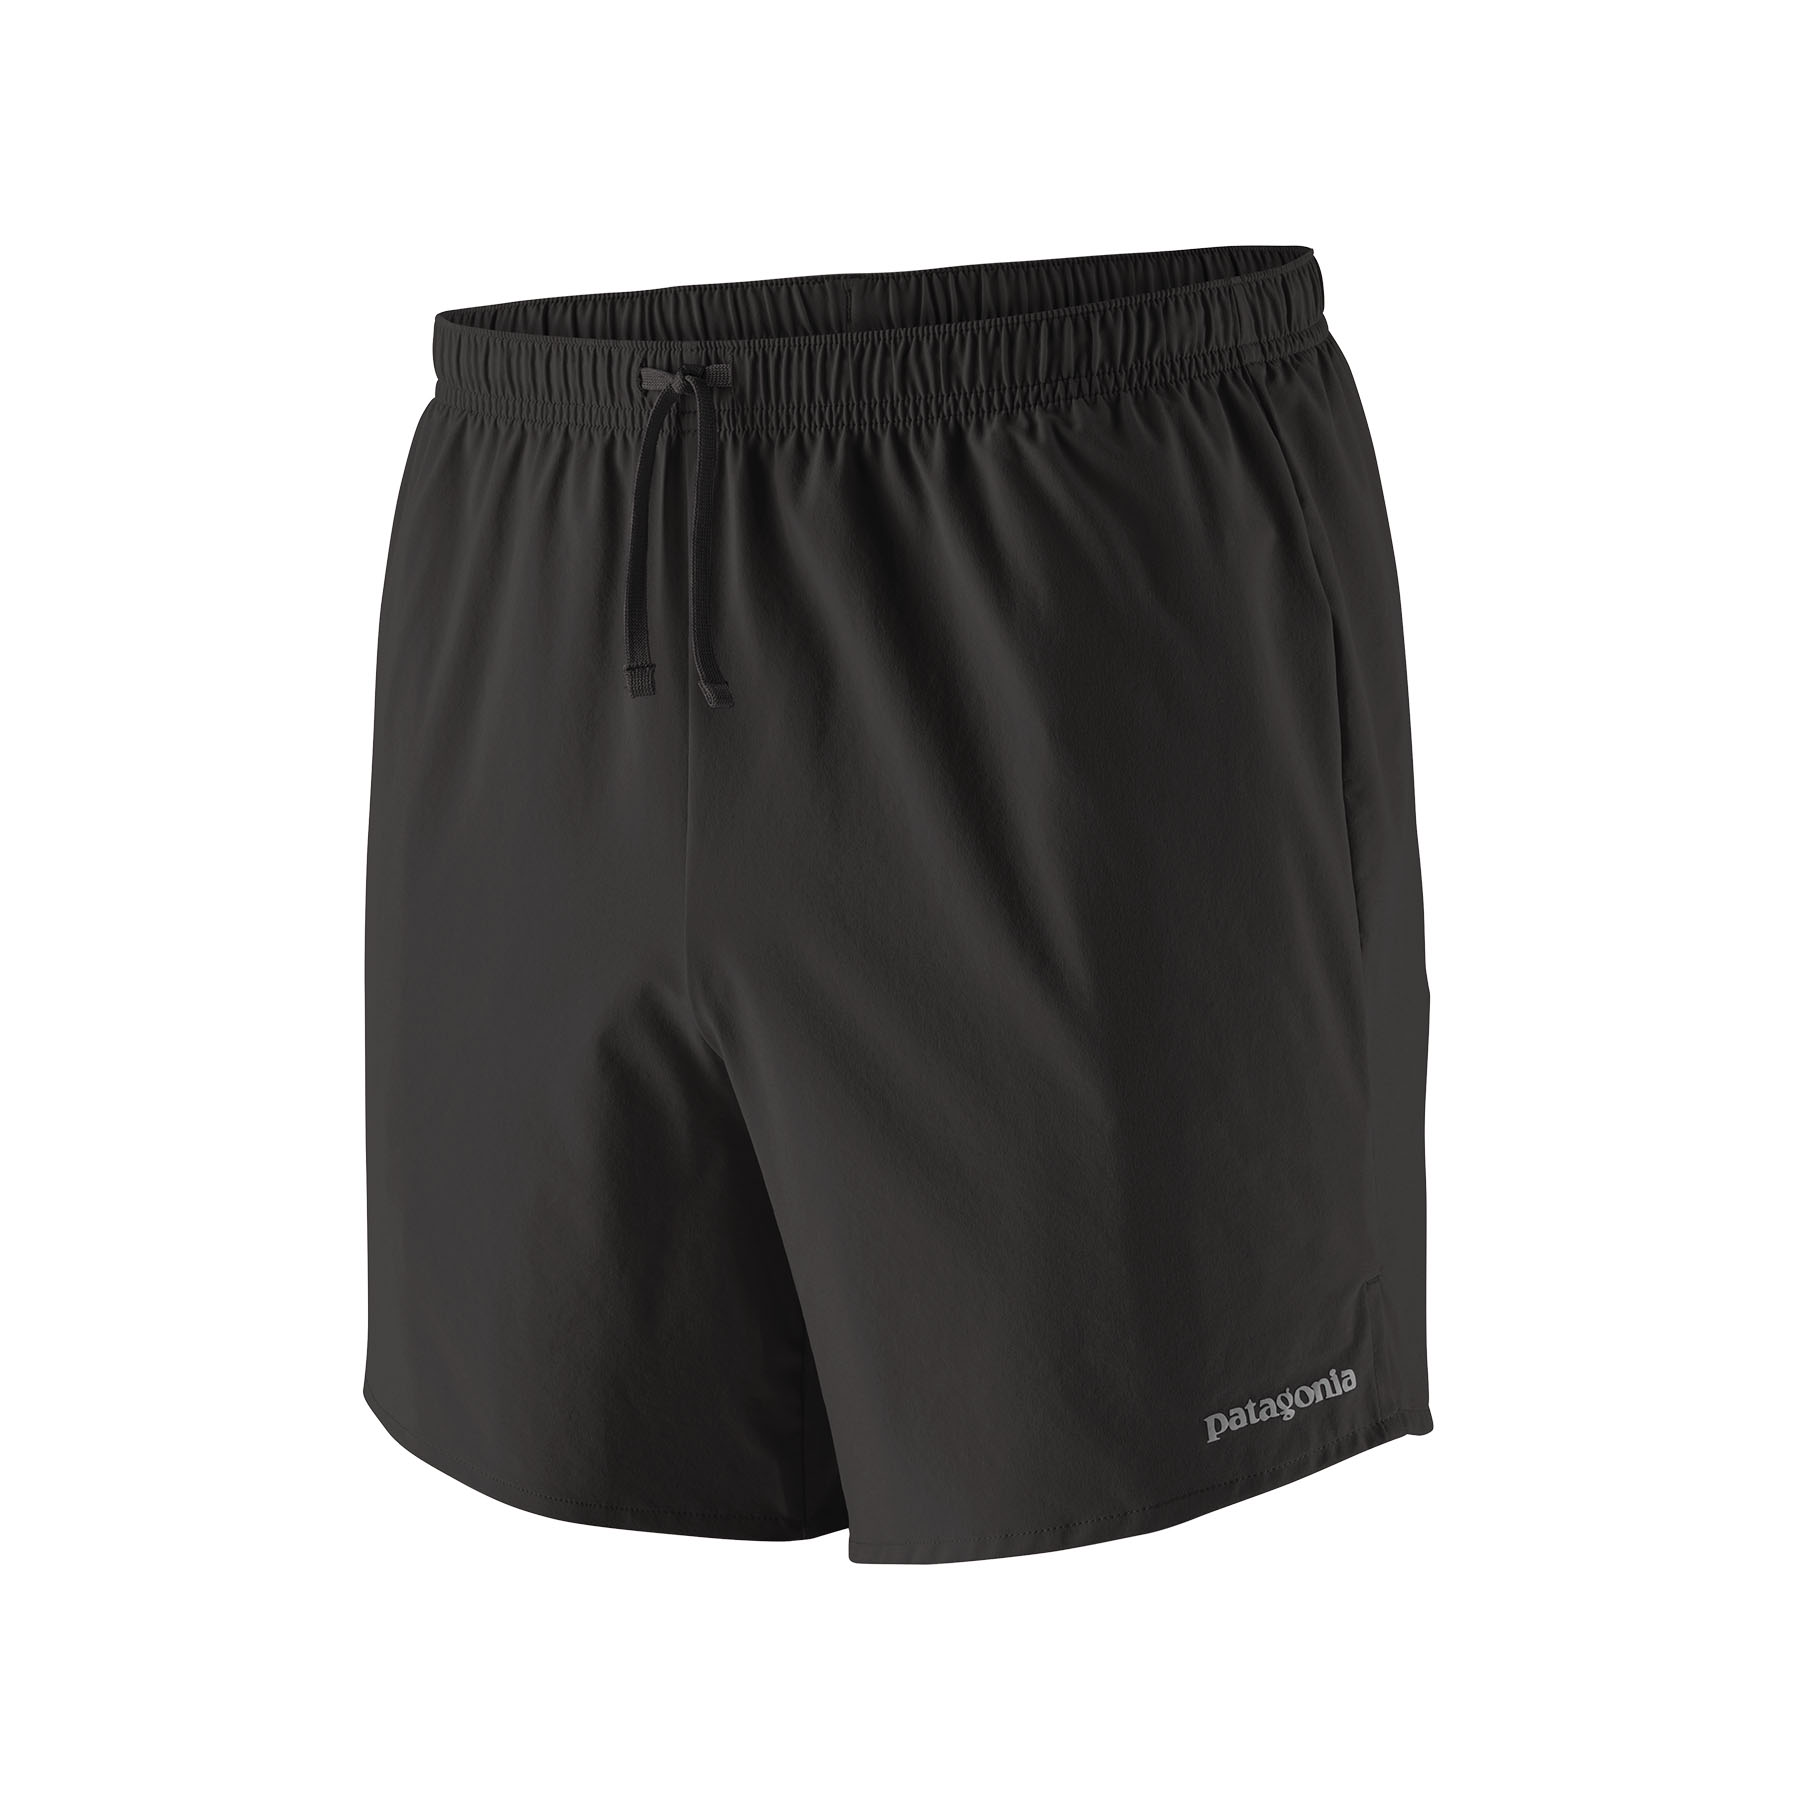 PATAGONIA Men's Trailfarer Shorts - 6" Black